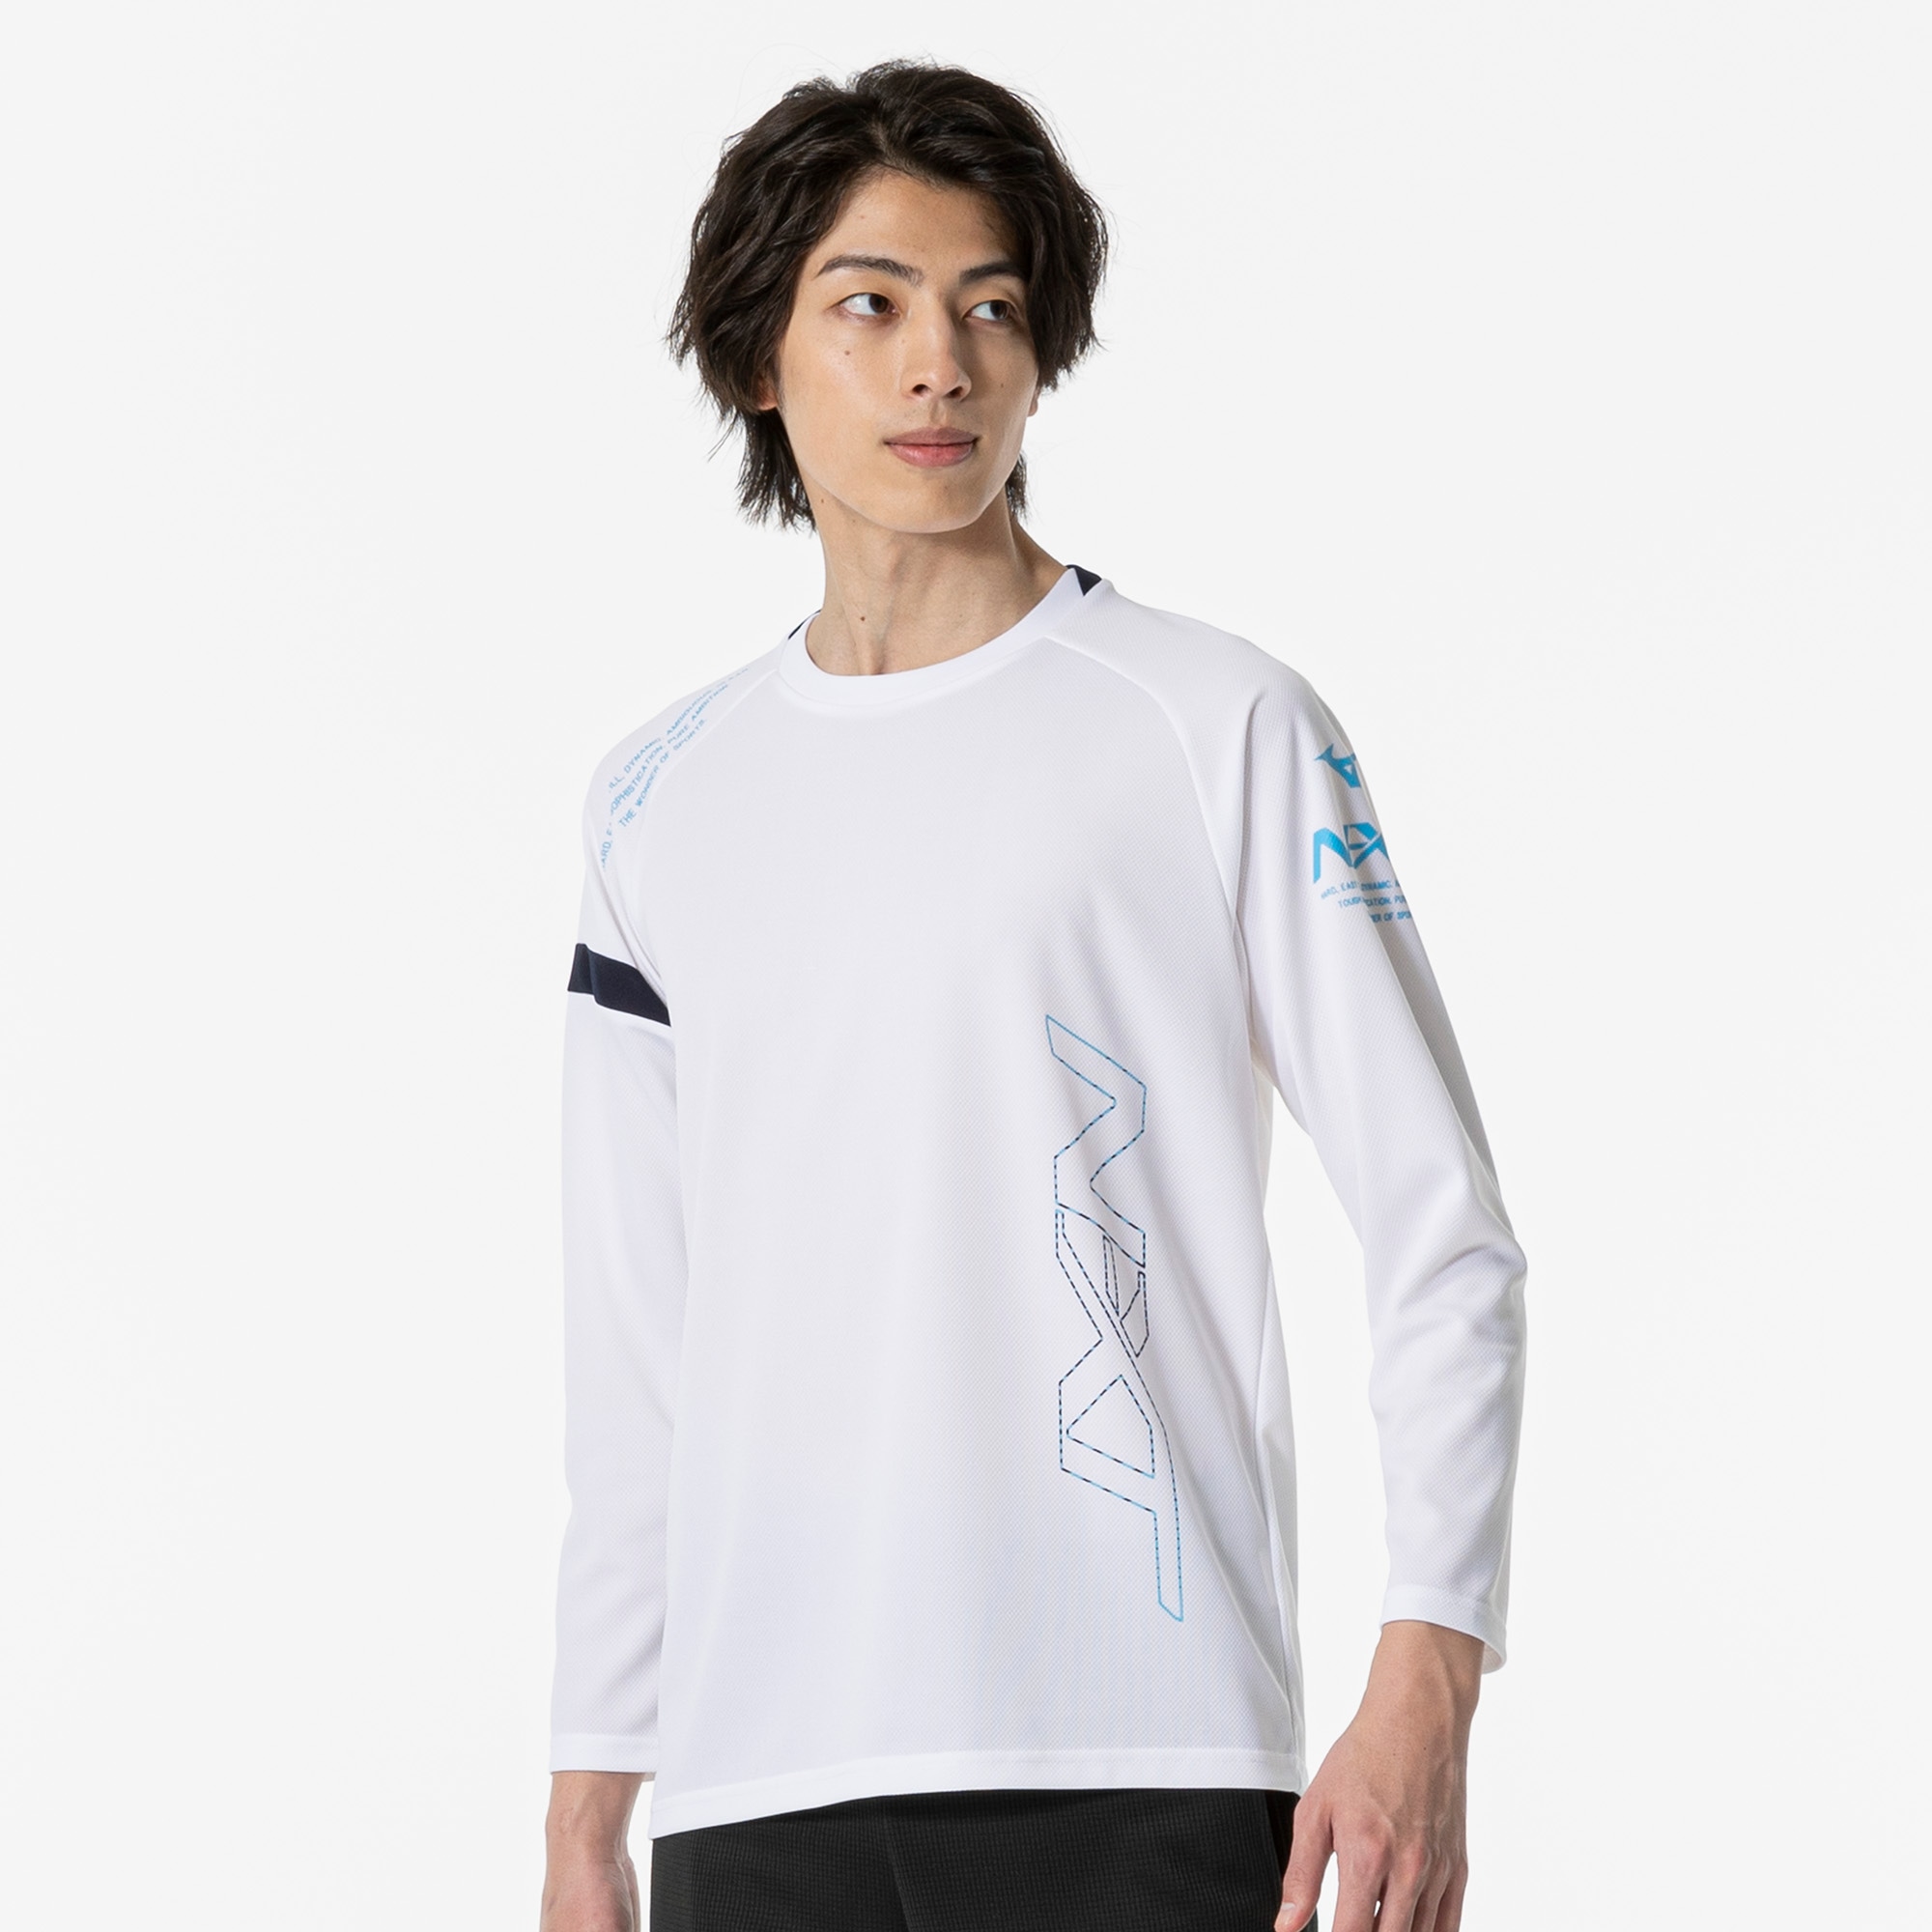 N-XT Tシャツ(長袖)[ユニセックス]|32JAA740|ミズノトレーニング